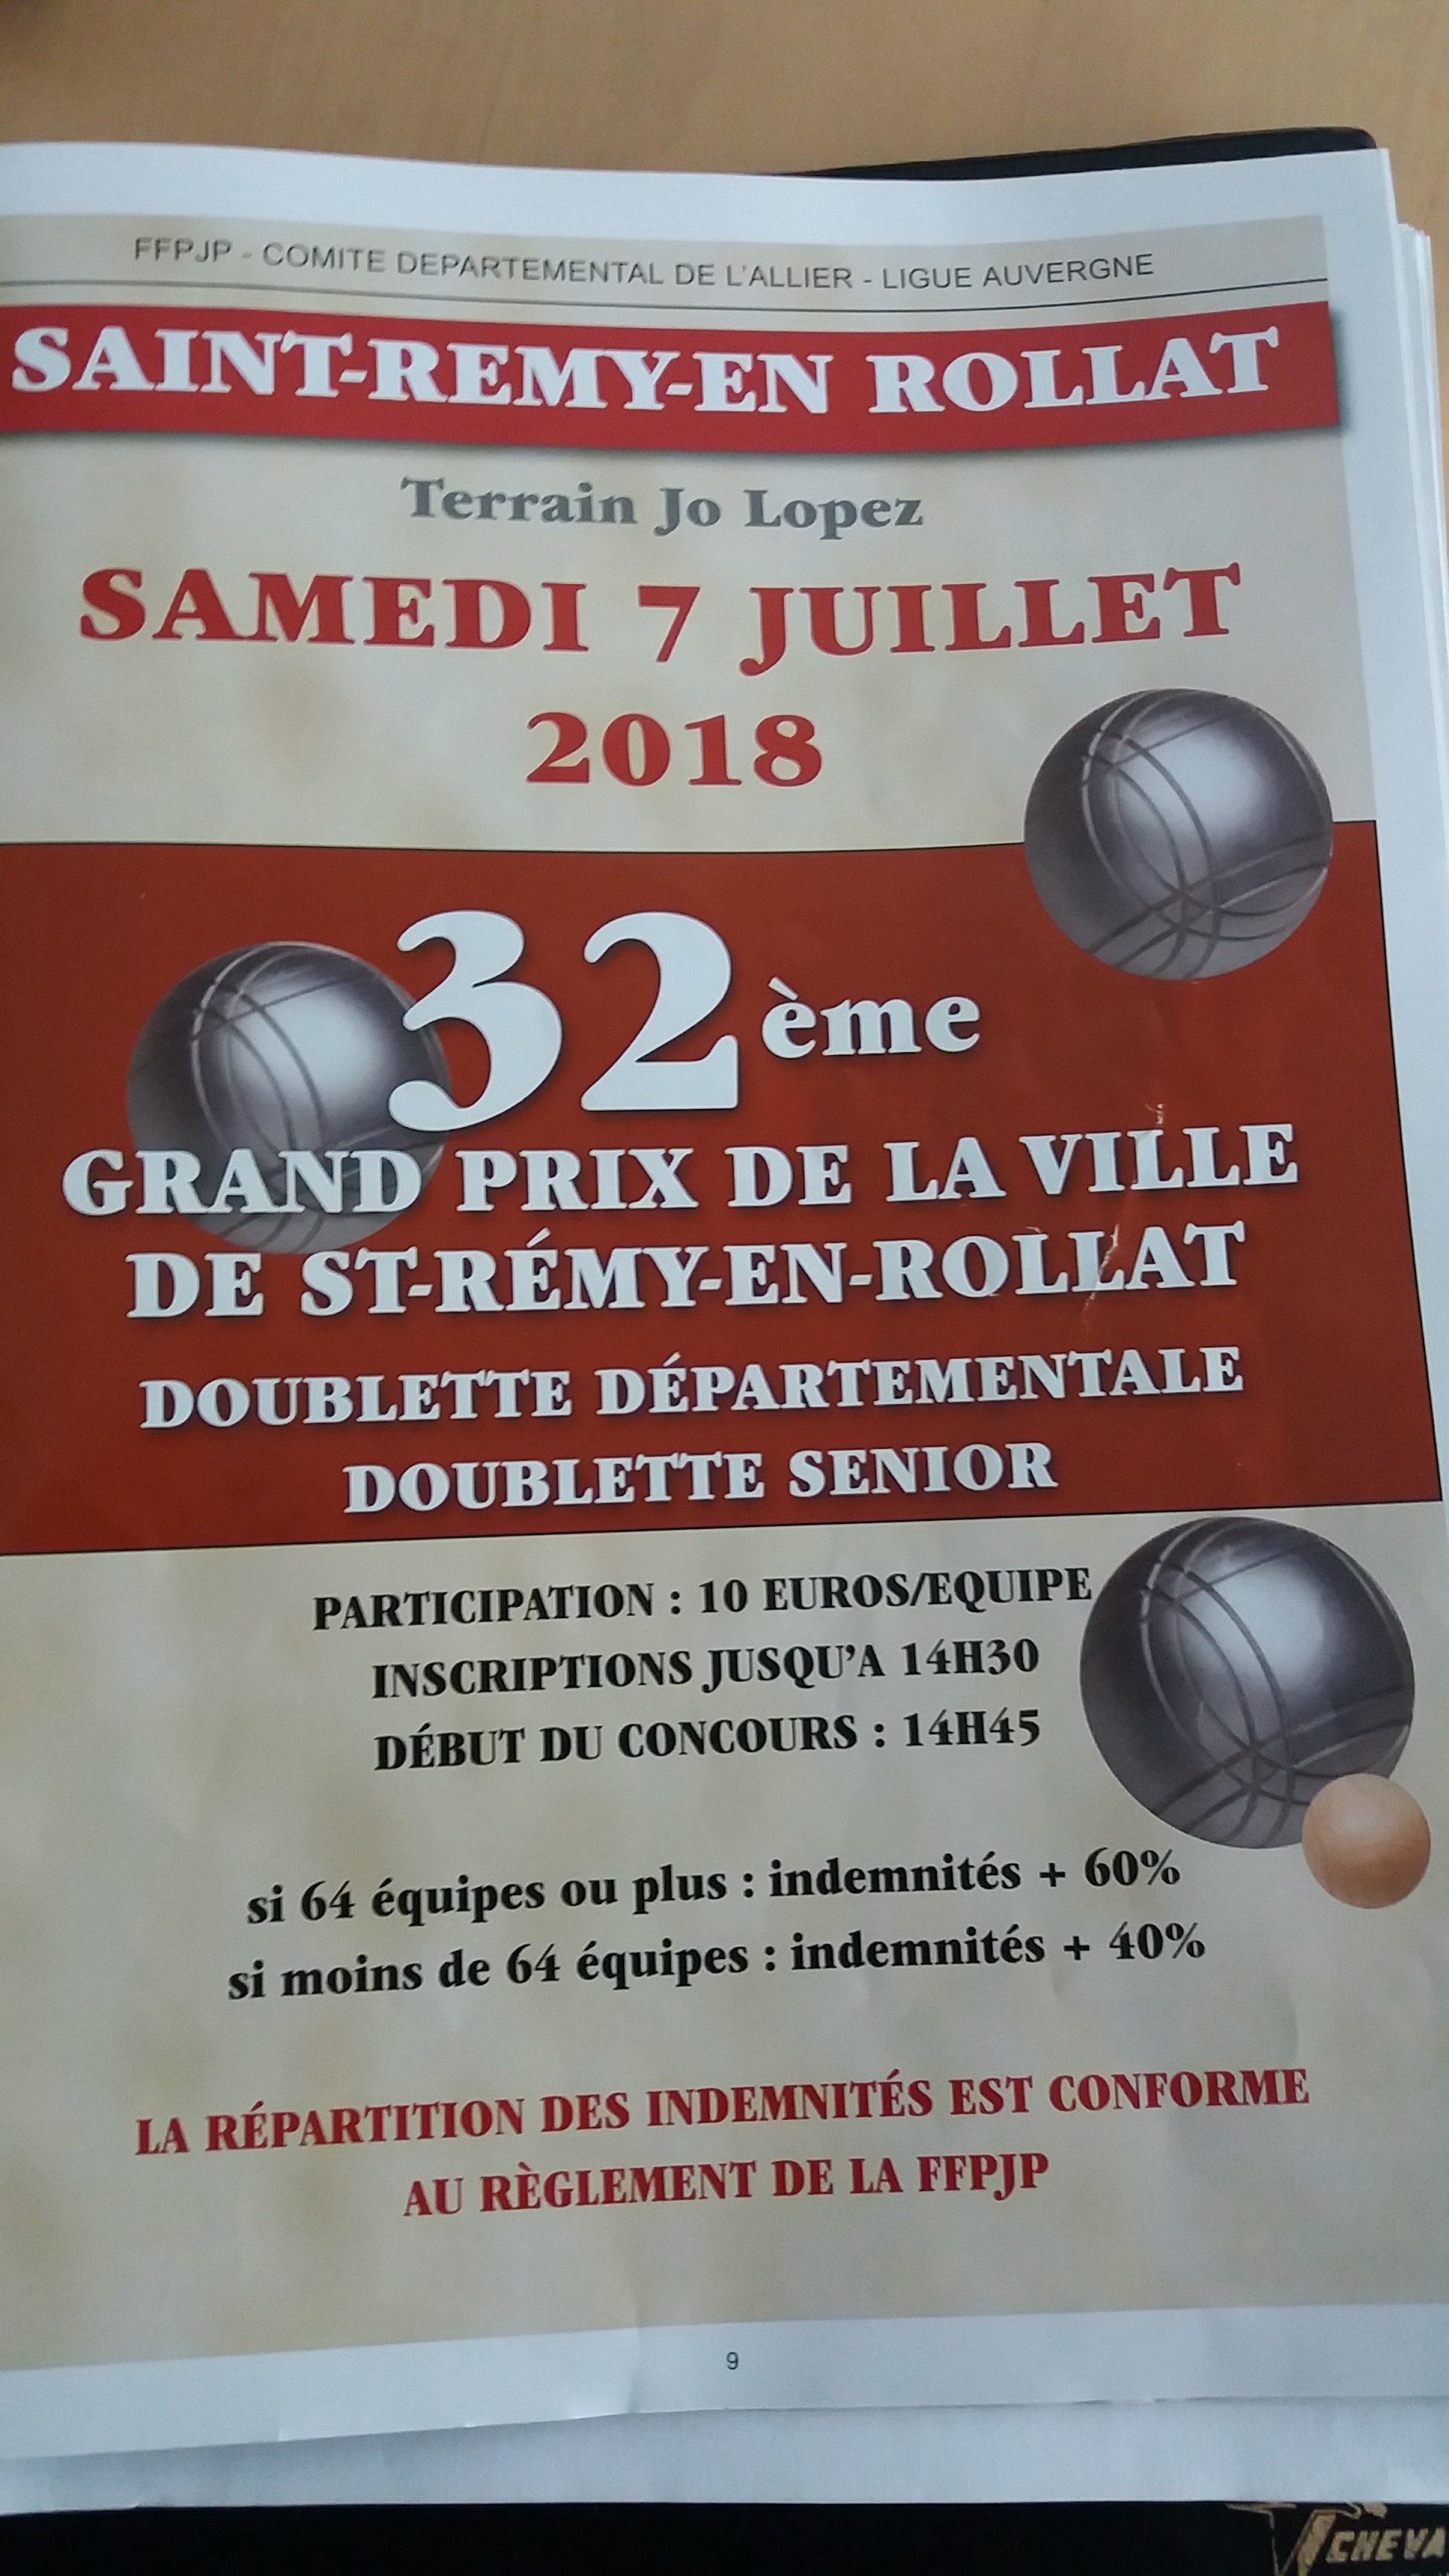 32ème GRAND PRIX DE LA VILLE DE SAINT REMY EN ROLLAT - DOUBLETTE DEPARTEMENTAL - SAMEDI 7 JUILLET 2018